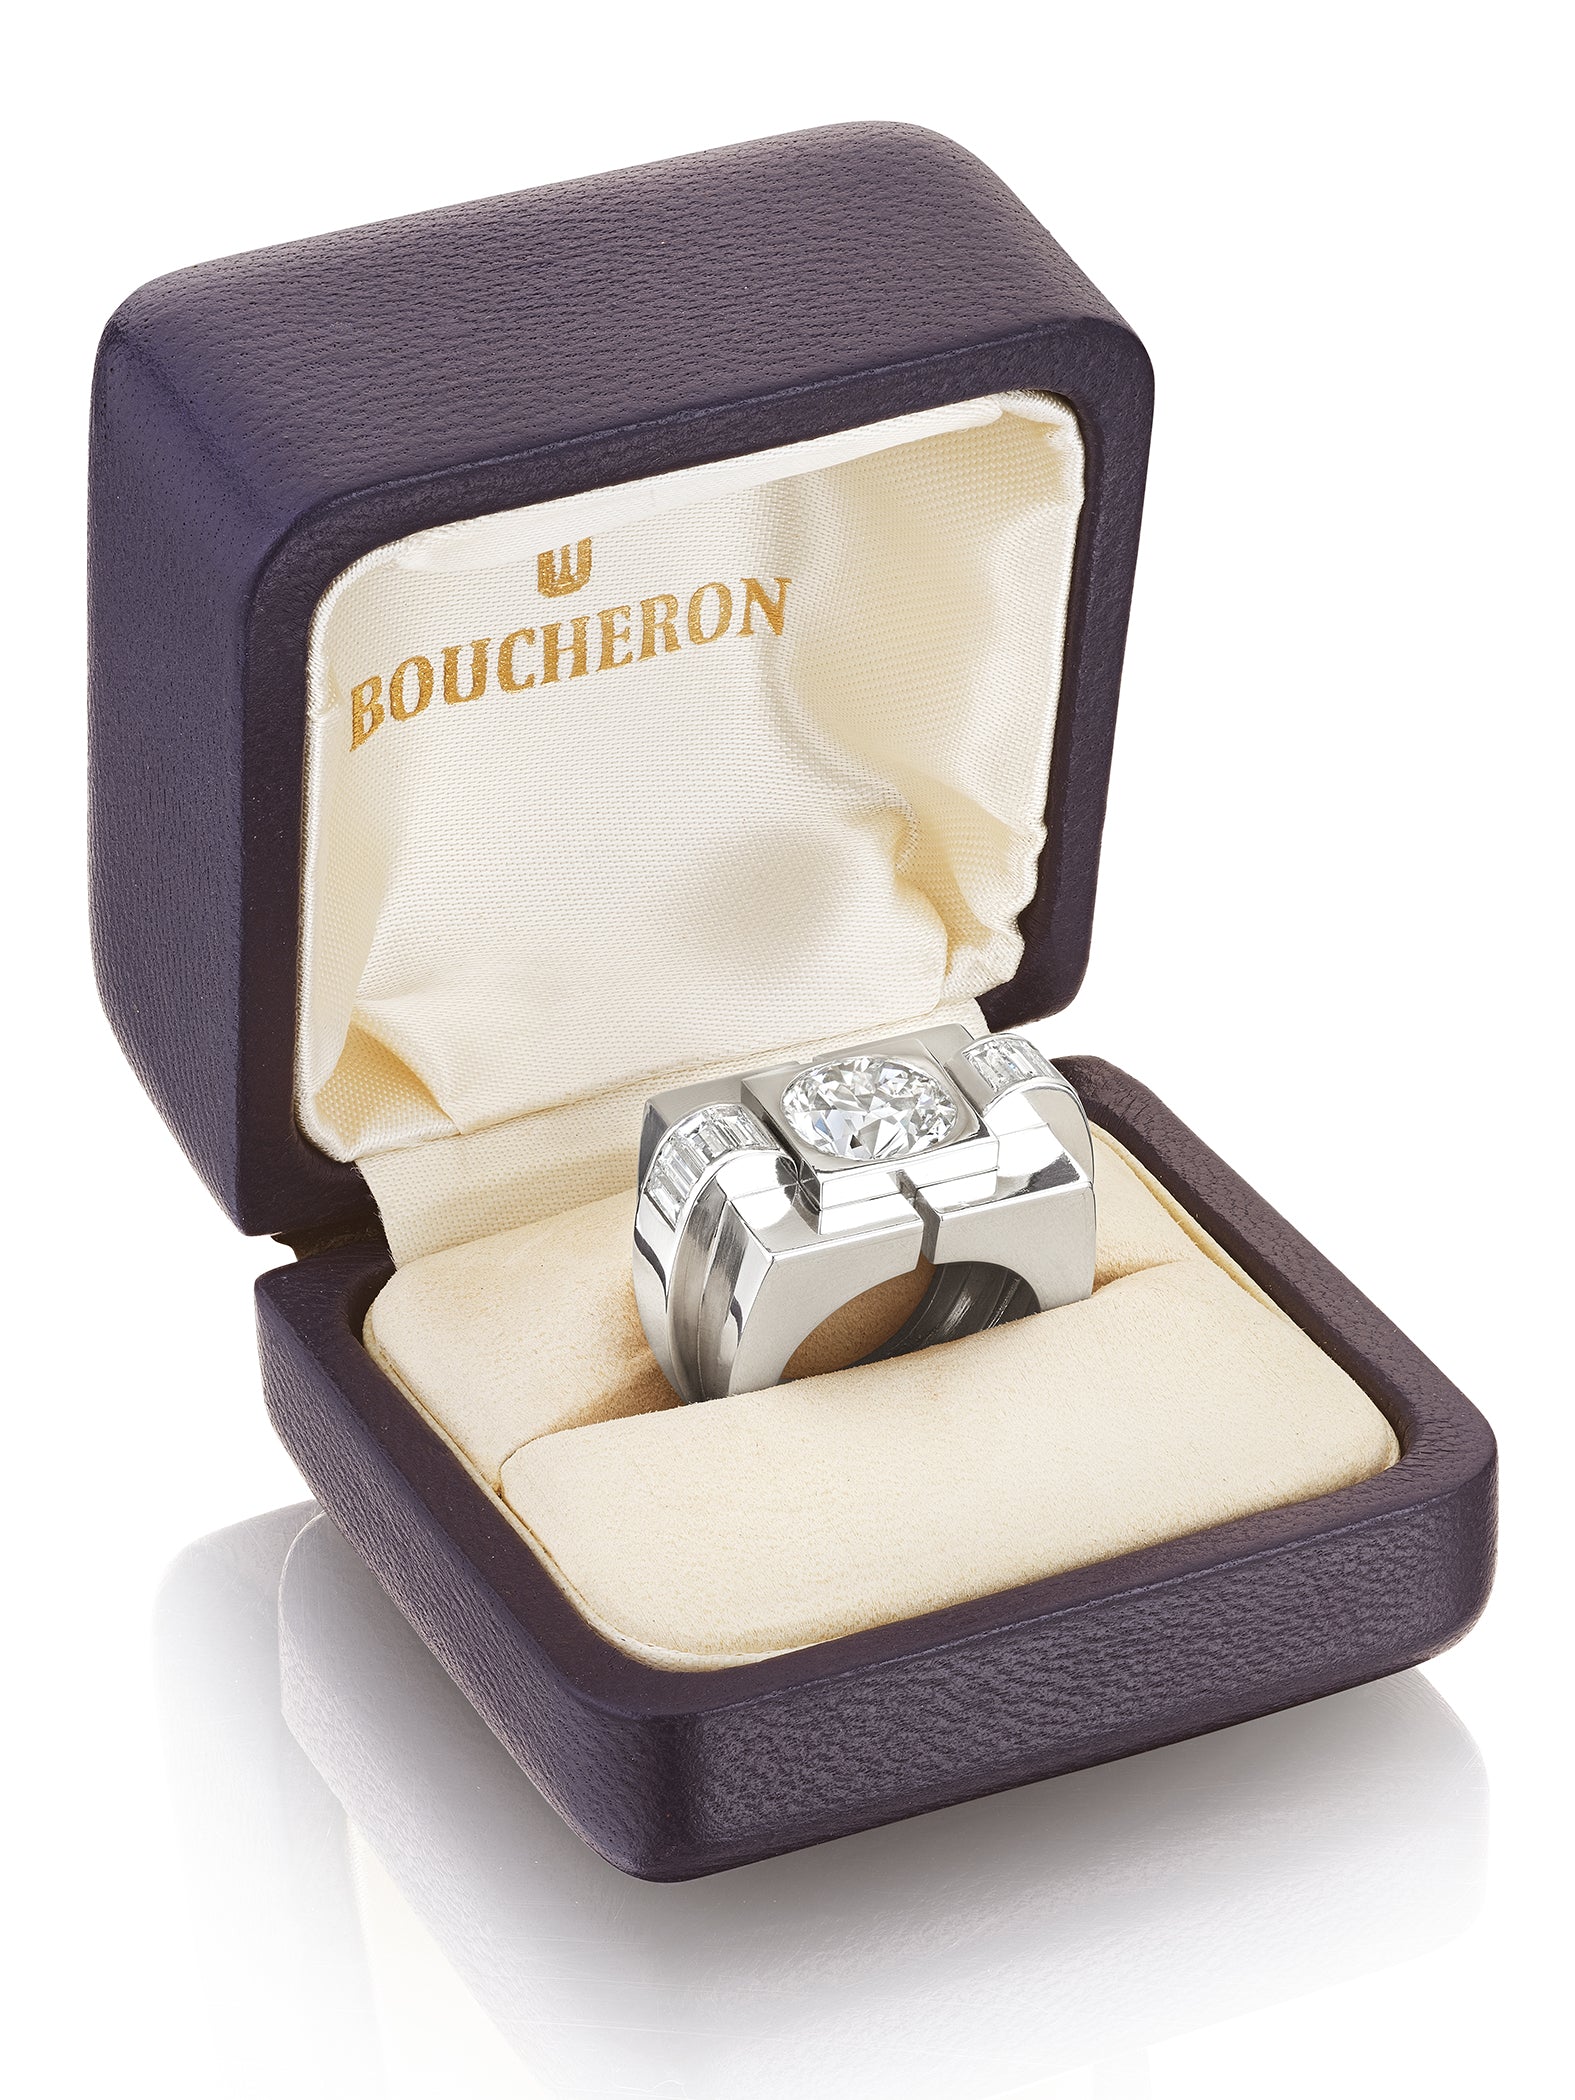 Platinum and Diamond Tank Ring by Boucheron, Paris, 1943